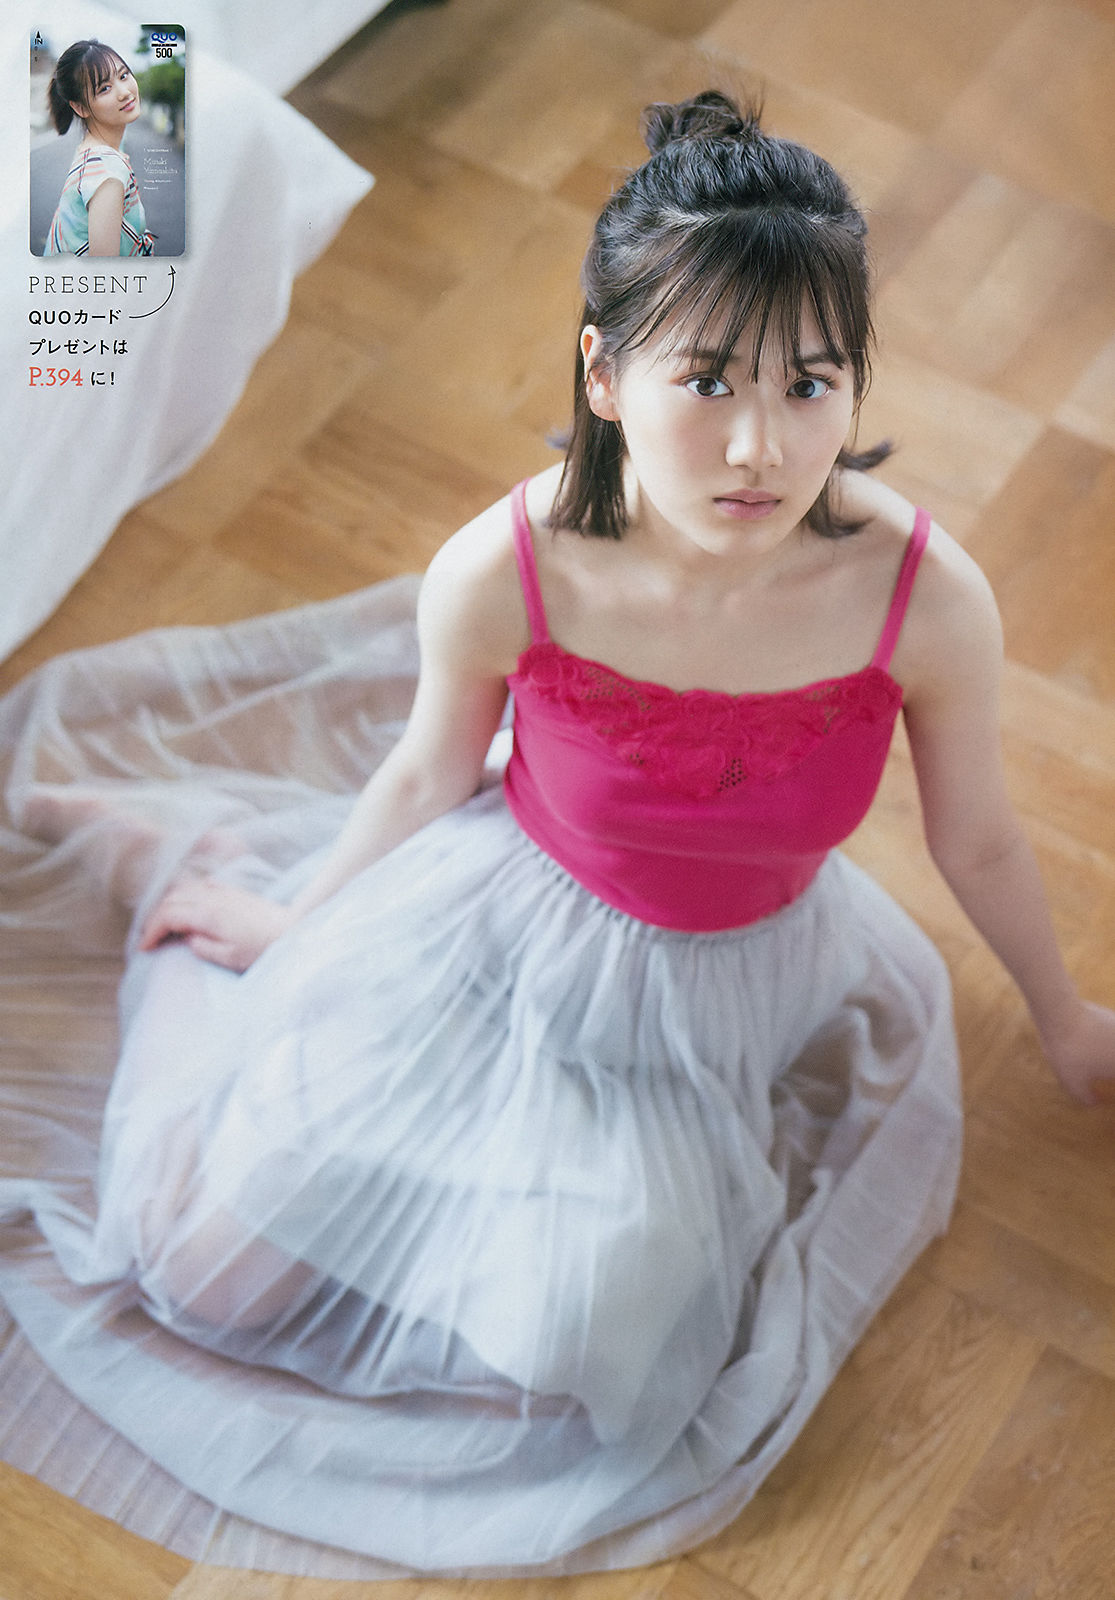 [Young Magazine] 2018年No.47 山下美月 Mizuki Yamashita